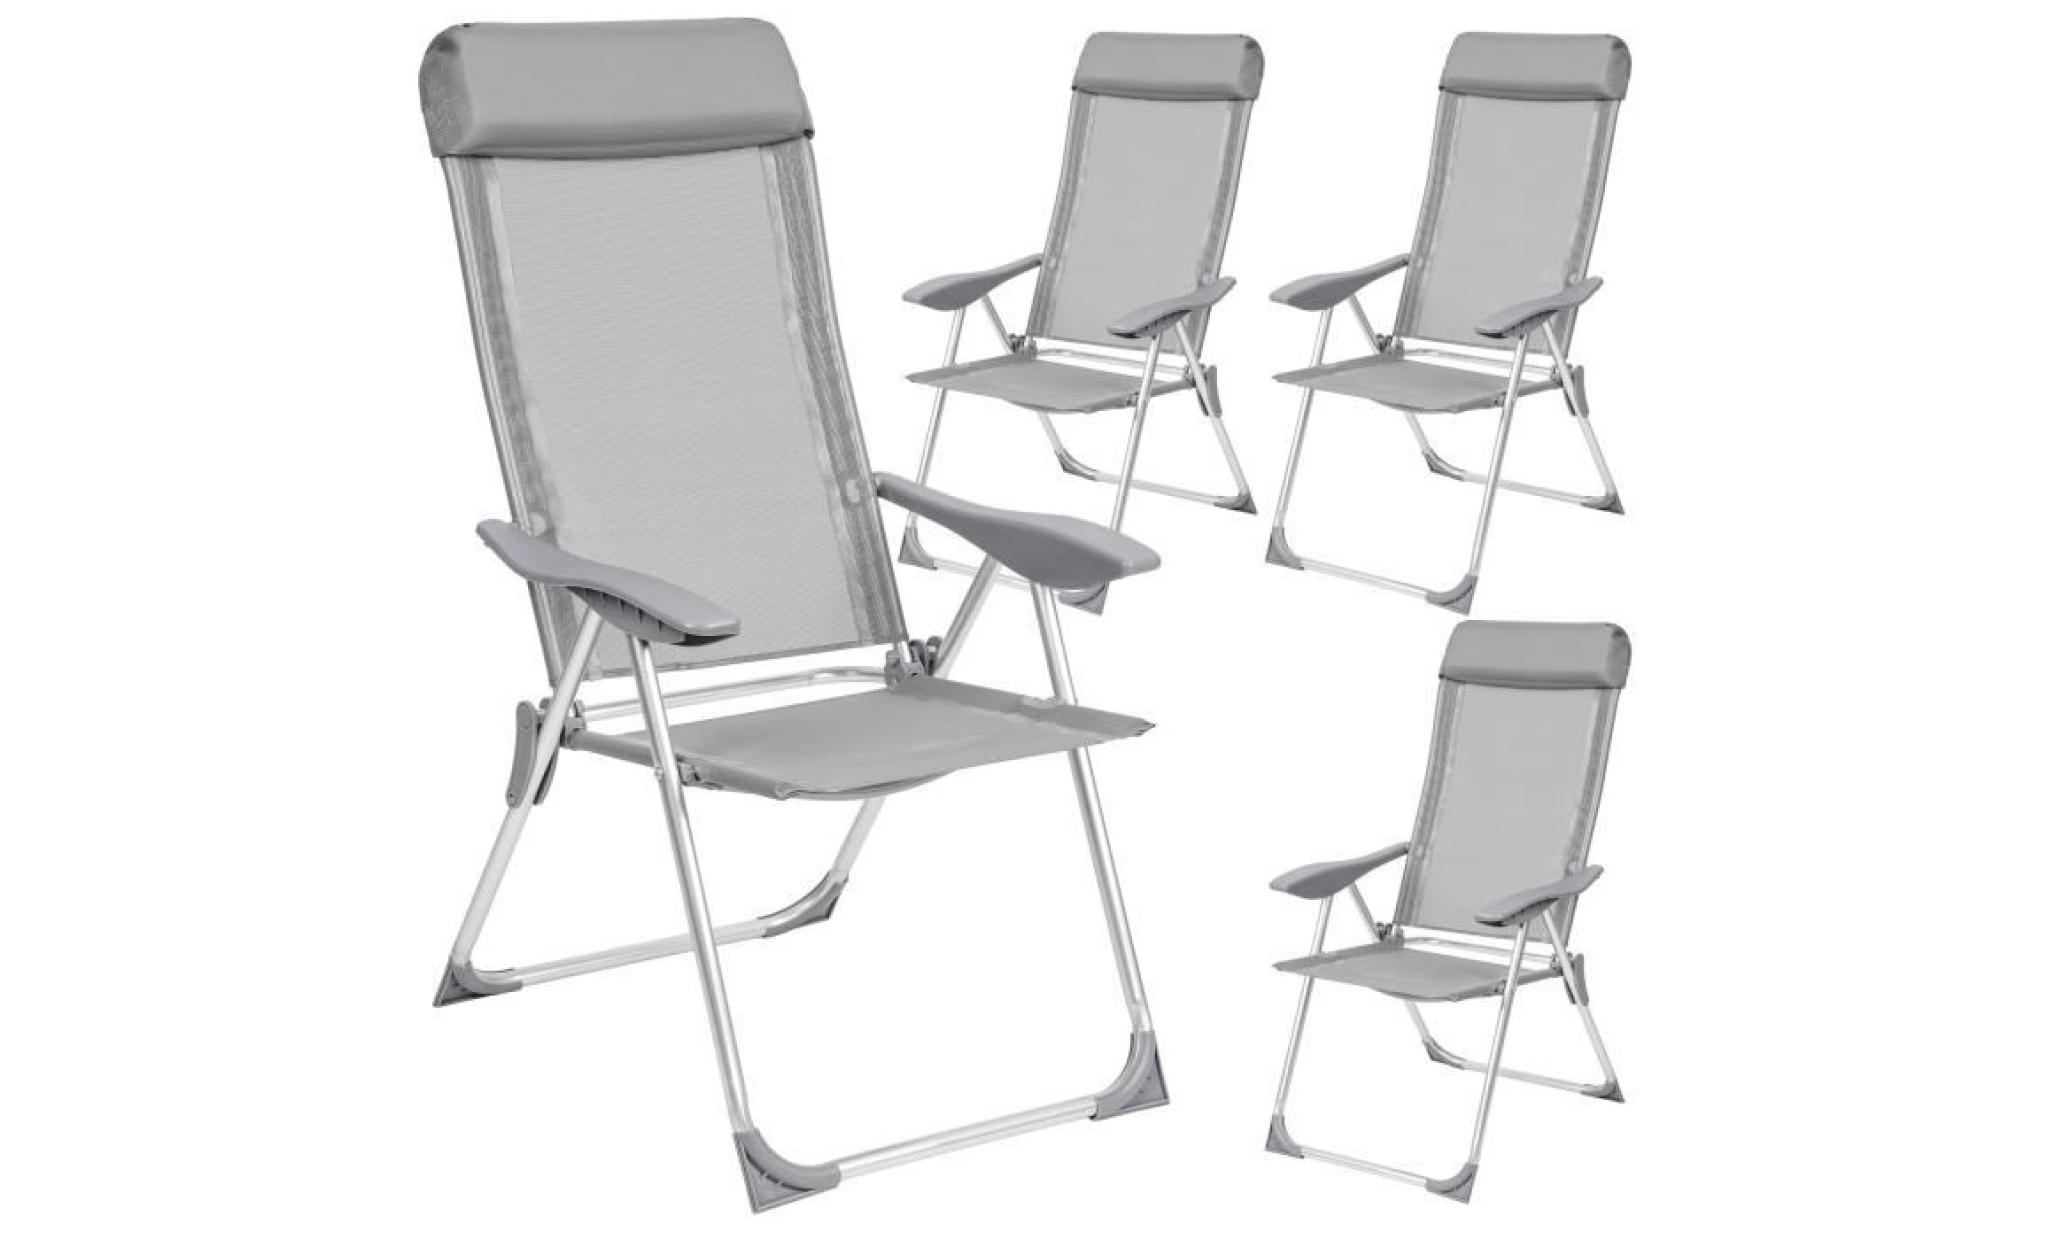 tectake 4 chaises de jardin en aluminium pliantes 73 cm x 59 cm x 110 cm gris